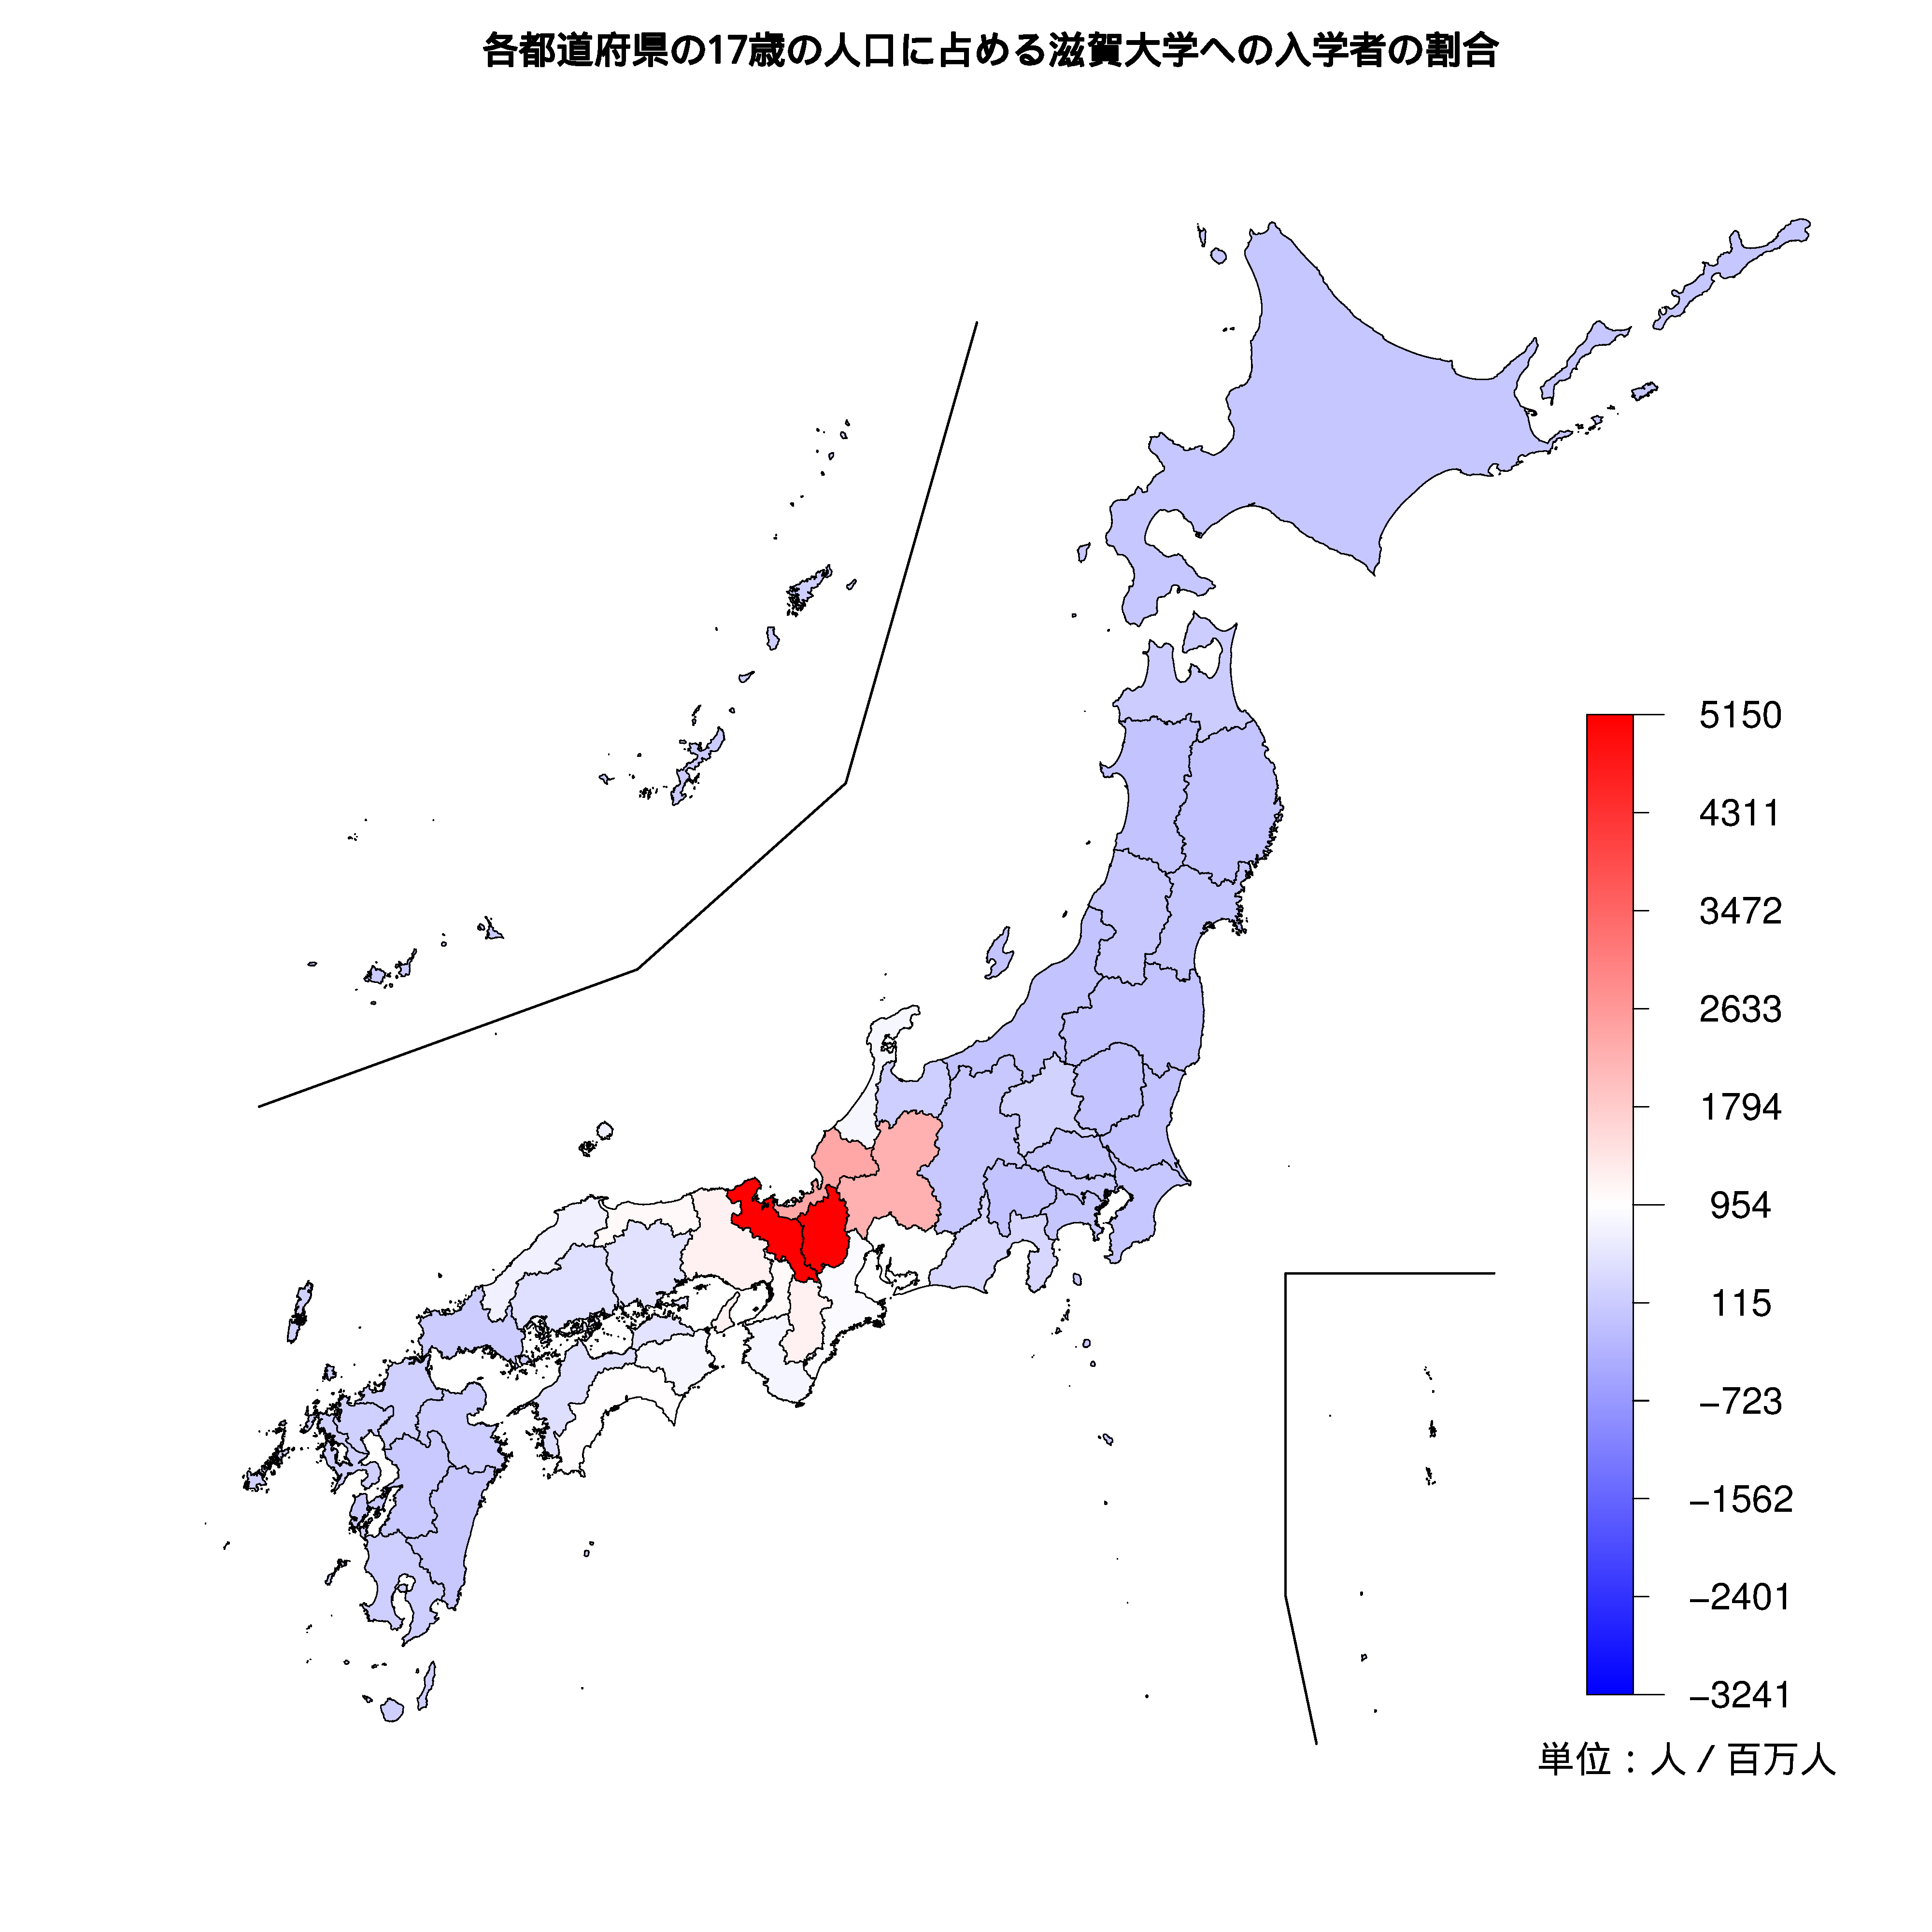 滋賀大学への入学者が多い都道府県の色分け地図